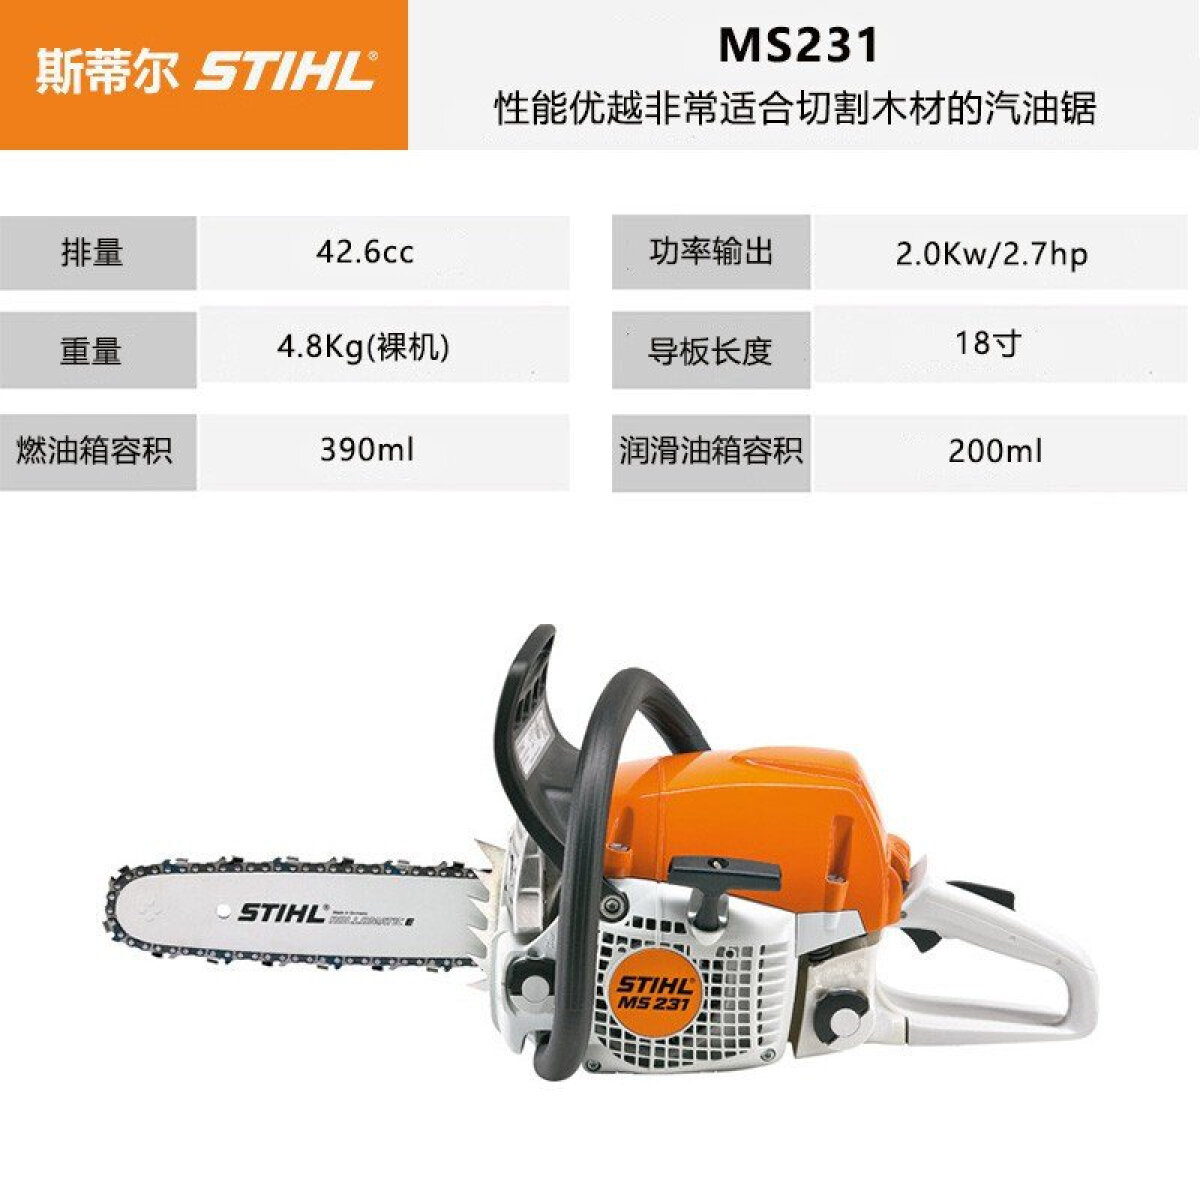 斯蒂尔 MS231 汽油机链锯